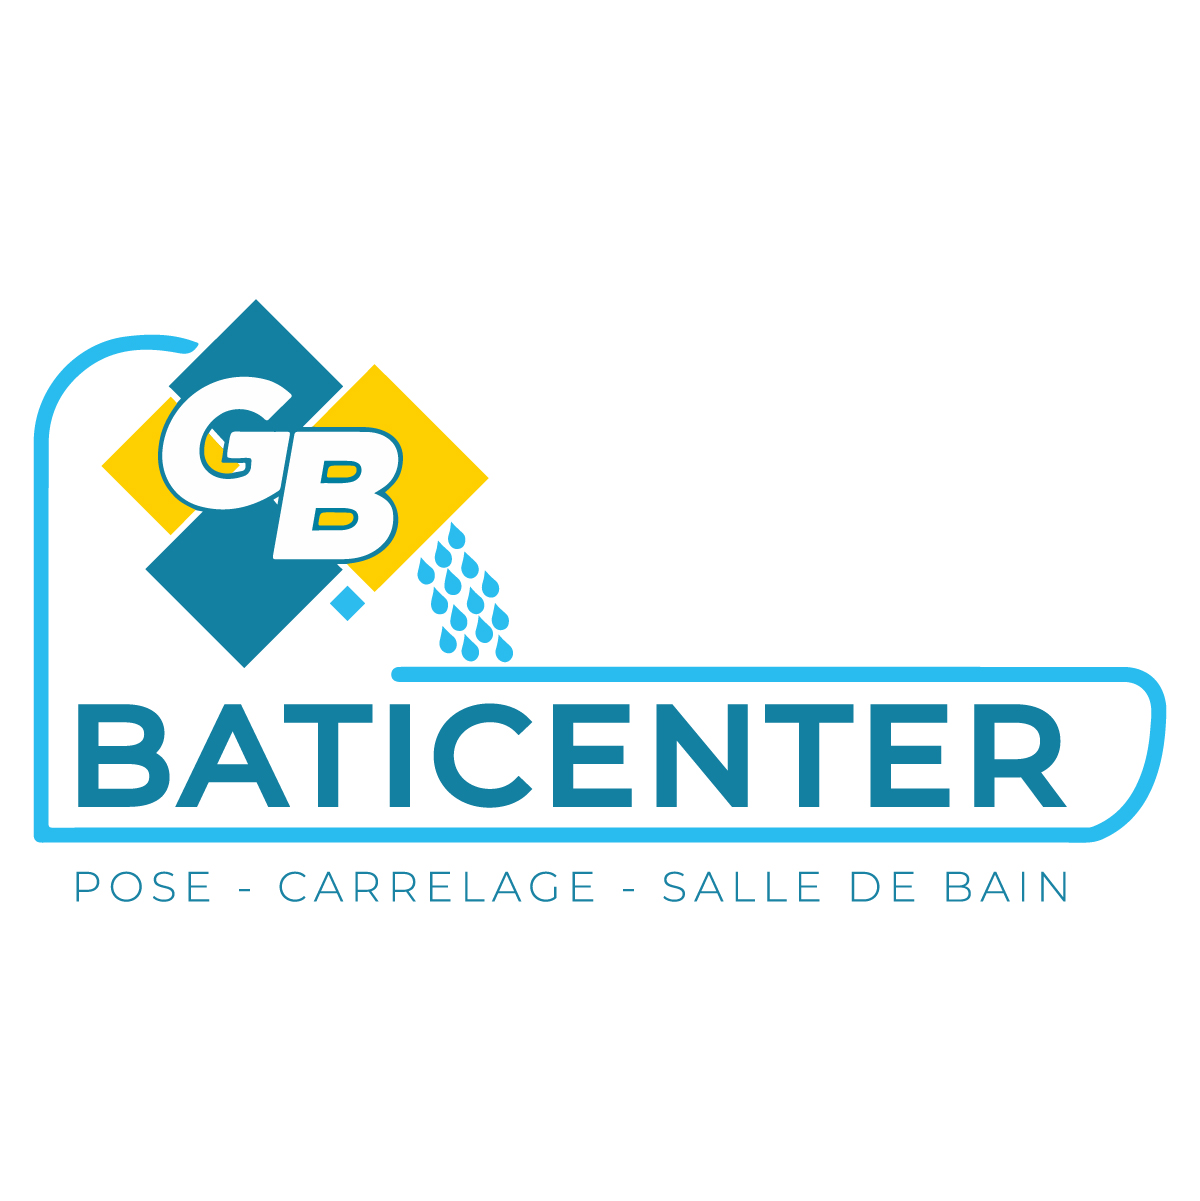 (c) Gb-baticenter.fr